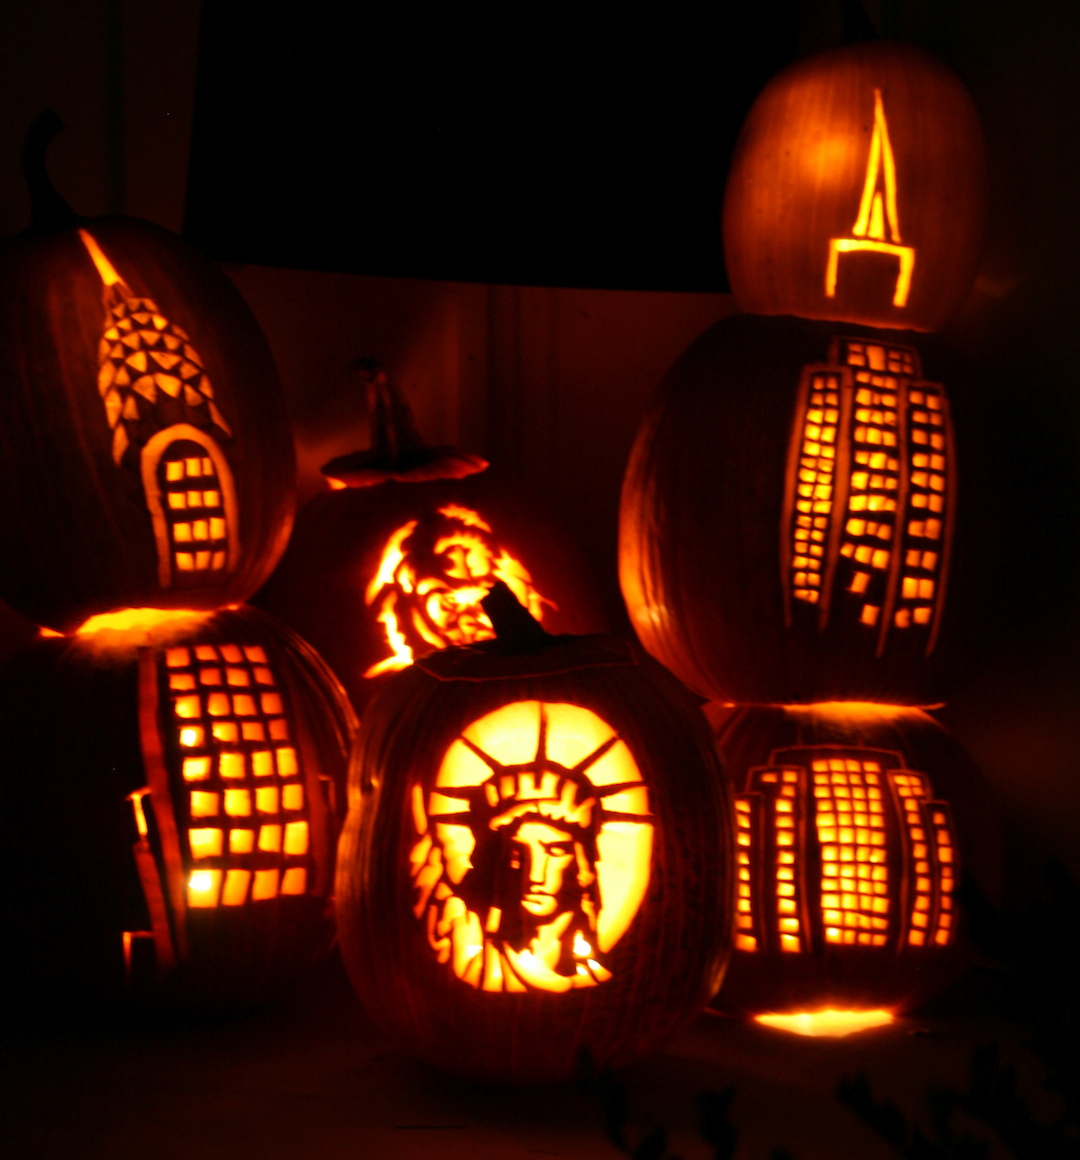 Pumpkin-carving contest